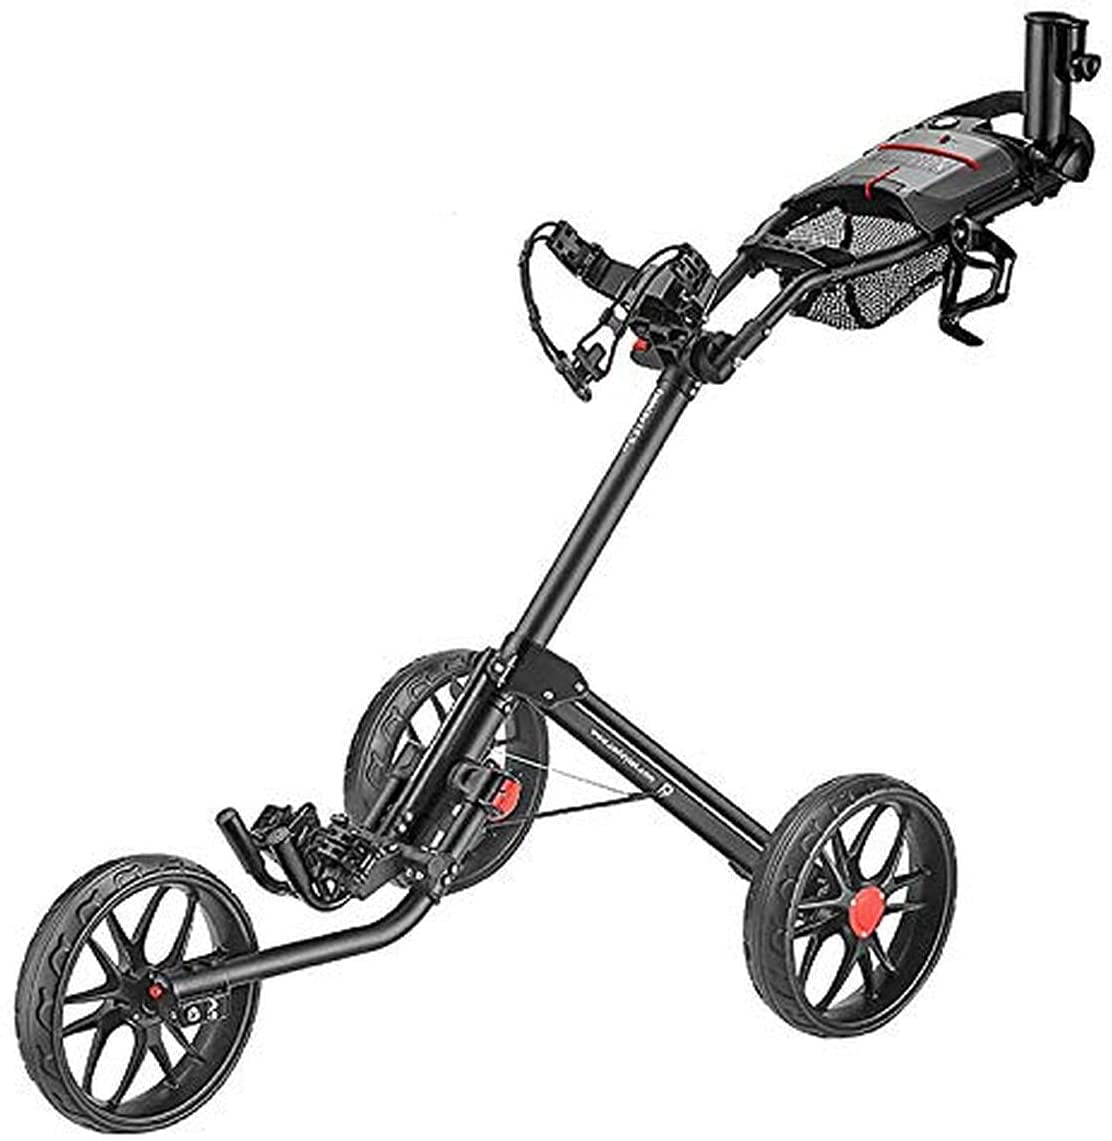 Caddymatic Golf Continental 3 Wheel Folding Golf Push/Pull Cart Black/Red 